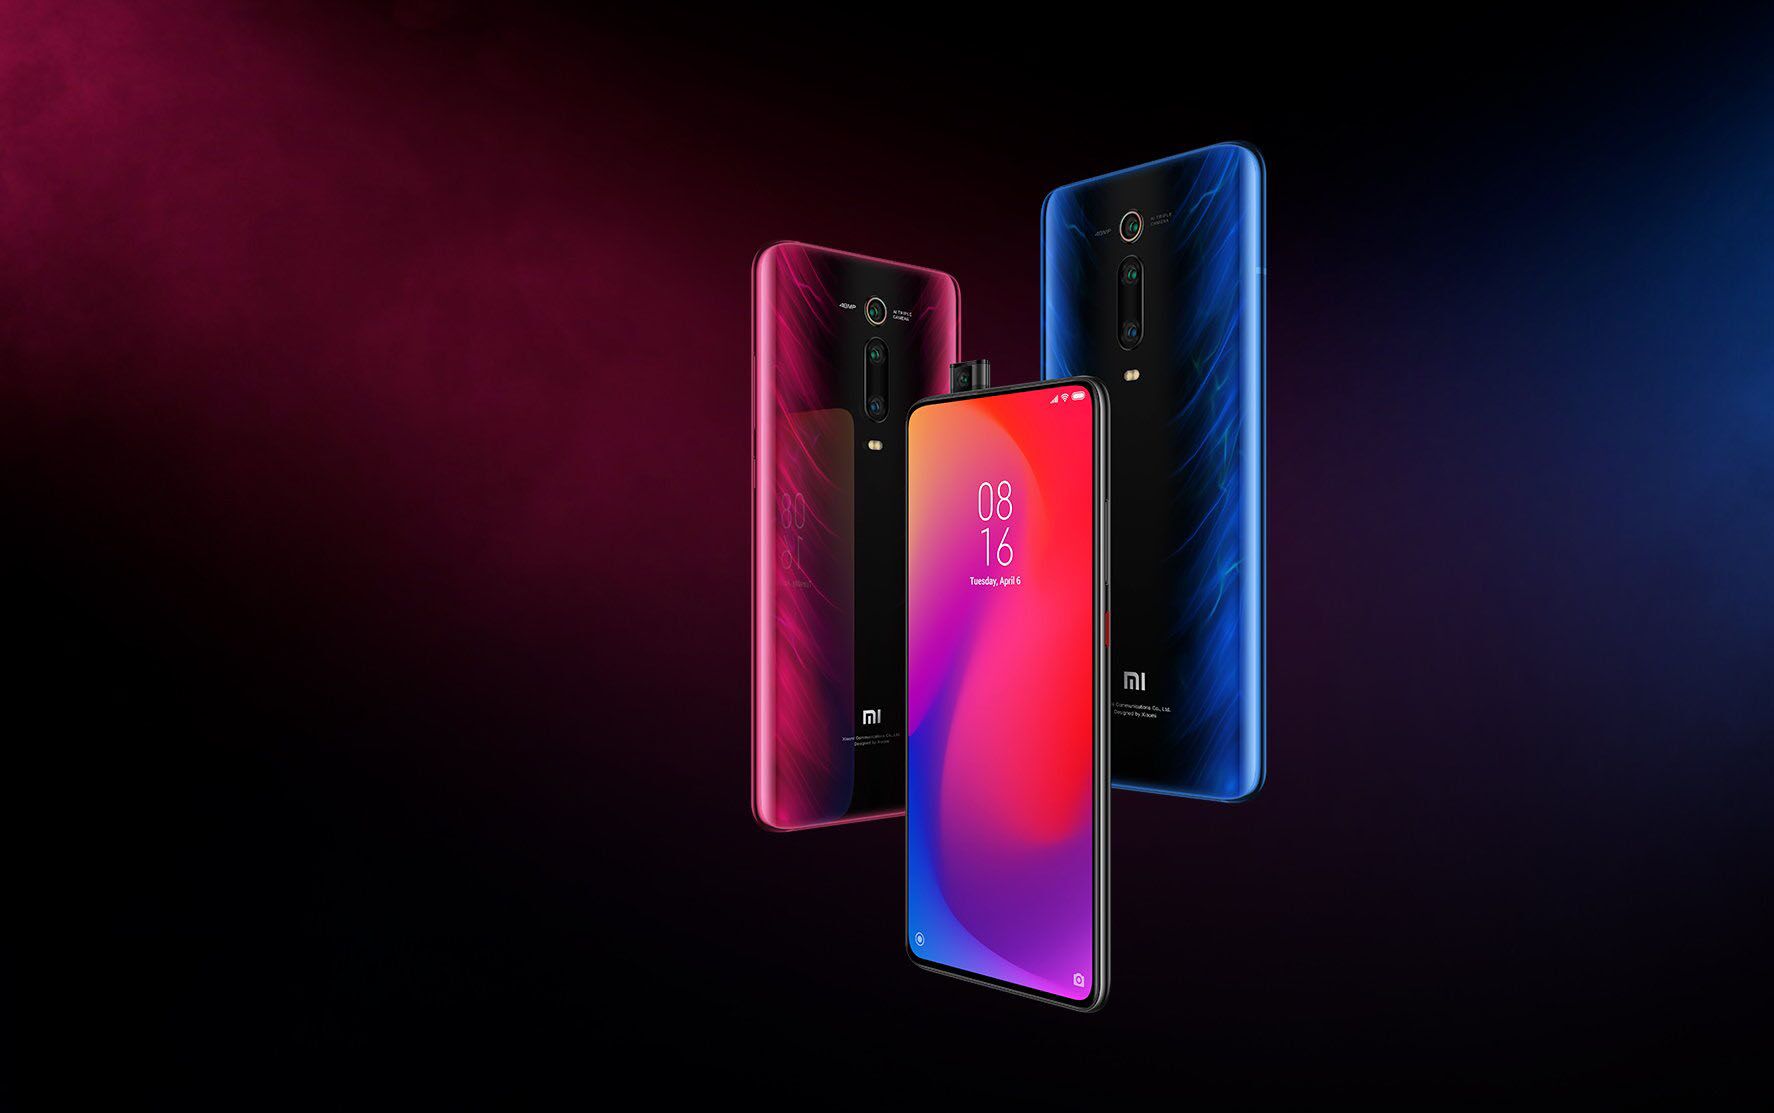 Xiaomi Mi Pro 2019